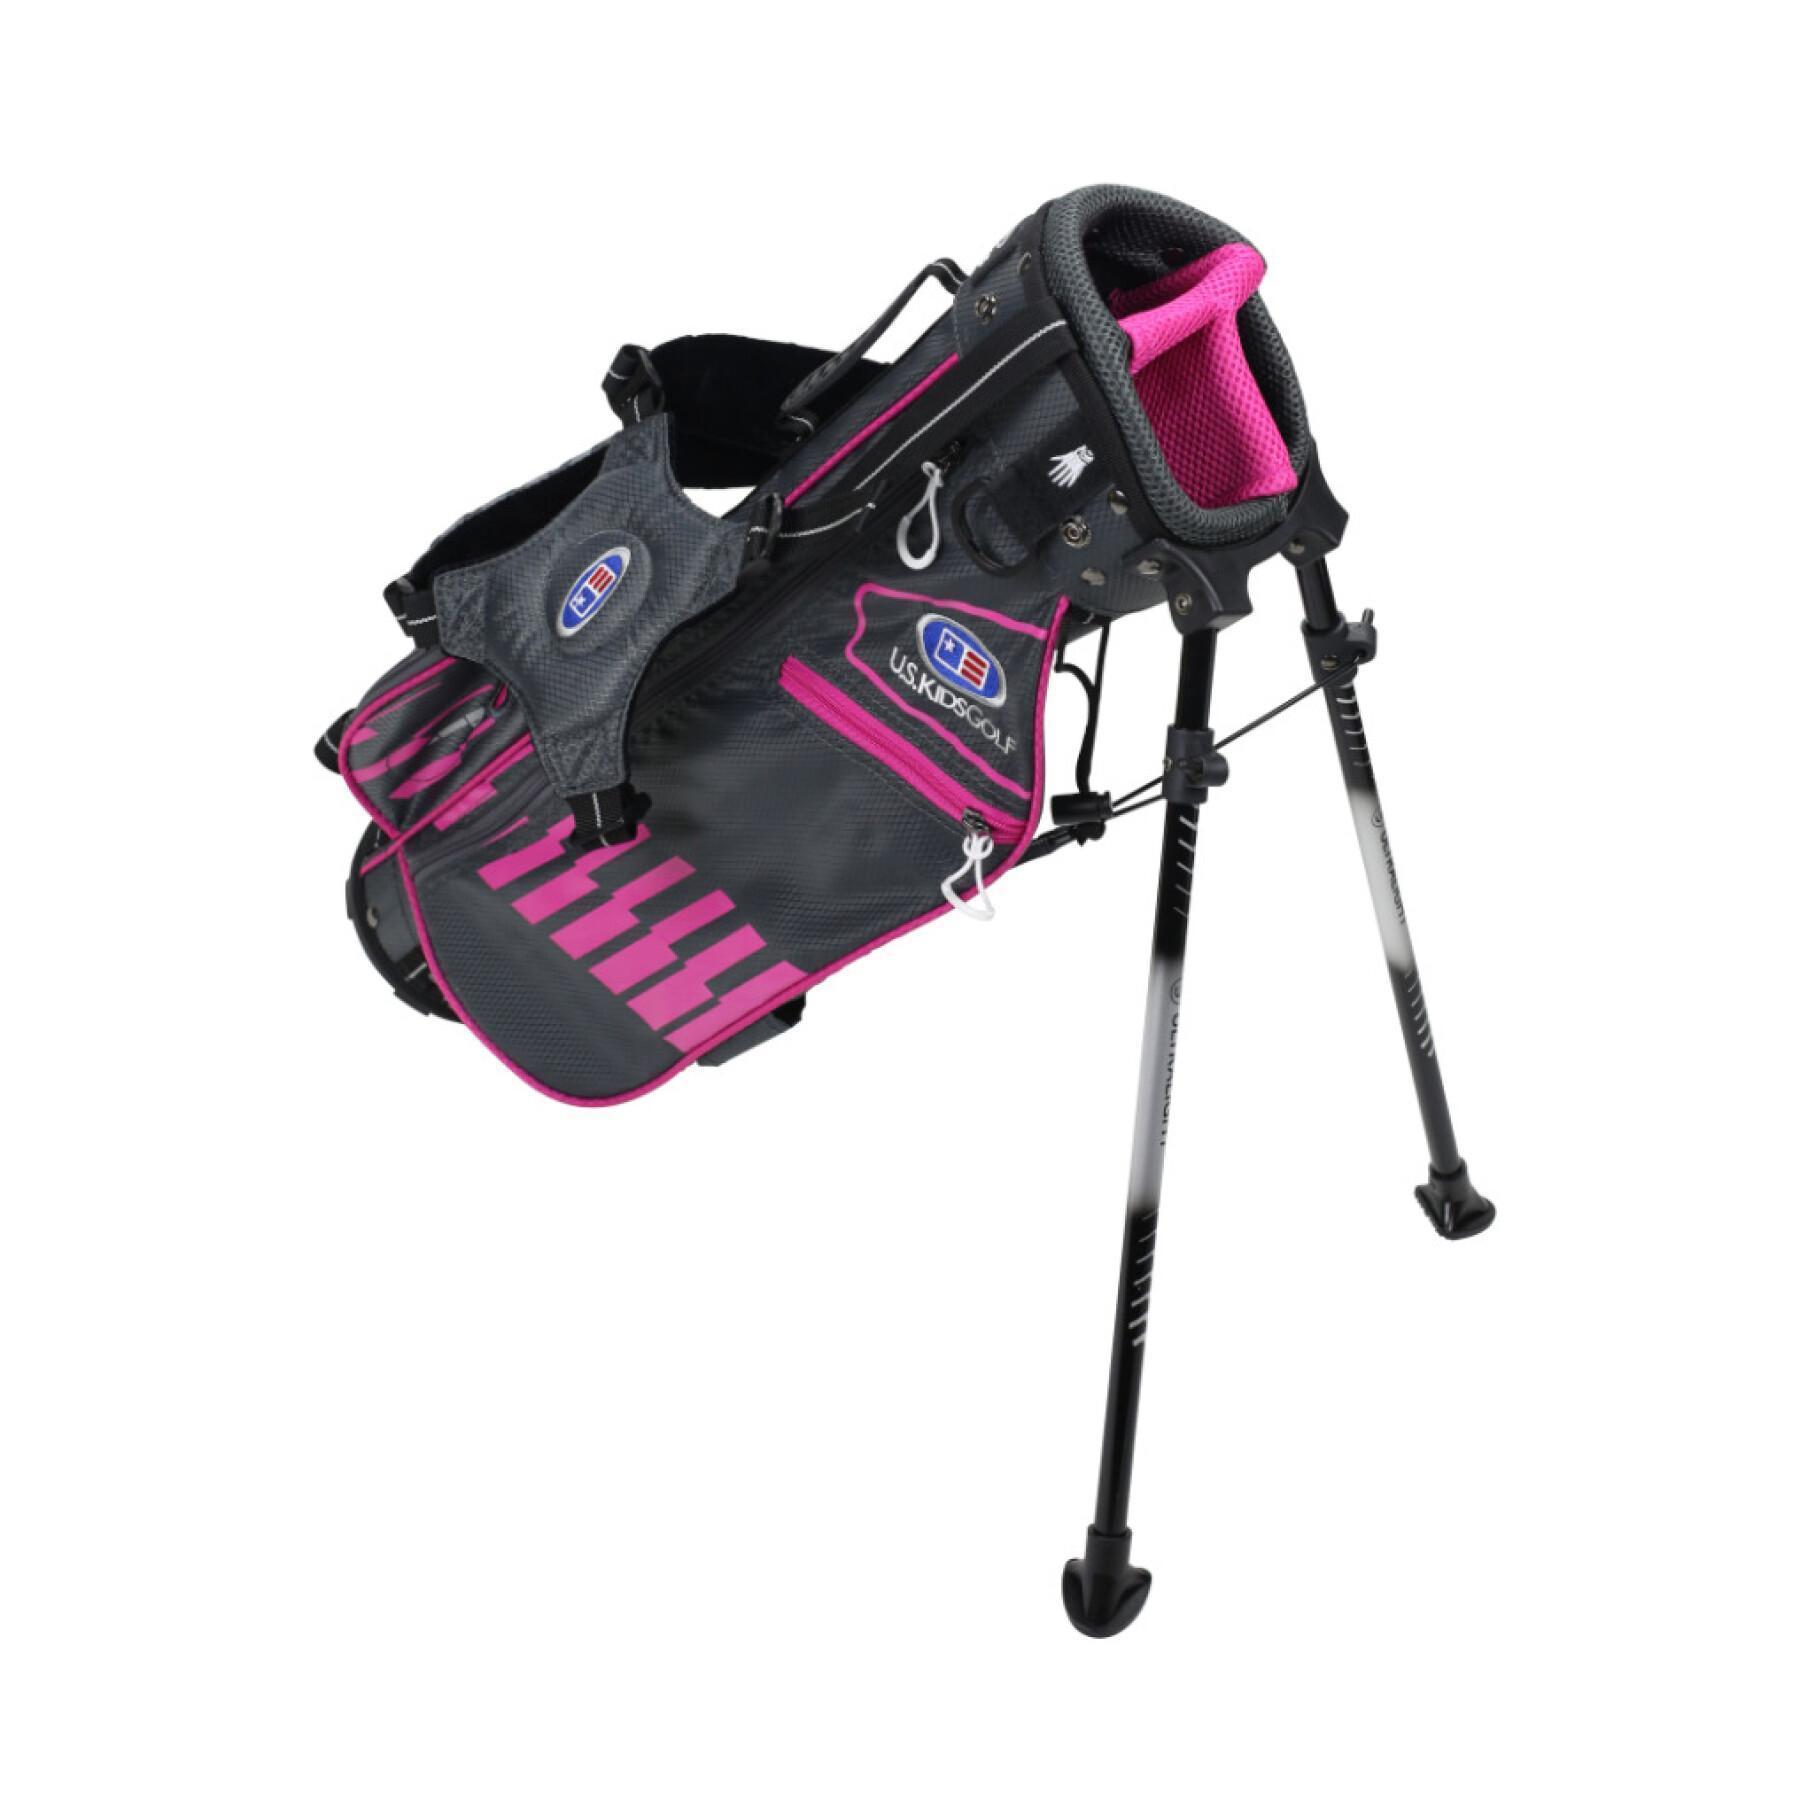 Väska för barn U.S Kids Golf ultralight avec trepied us-45 / 2020